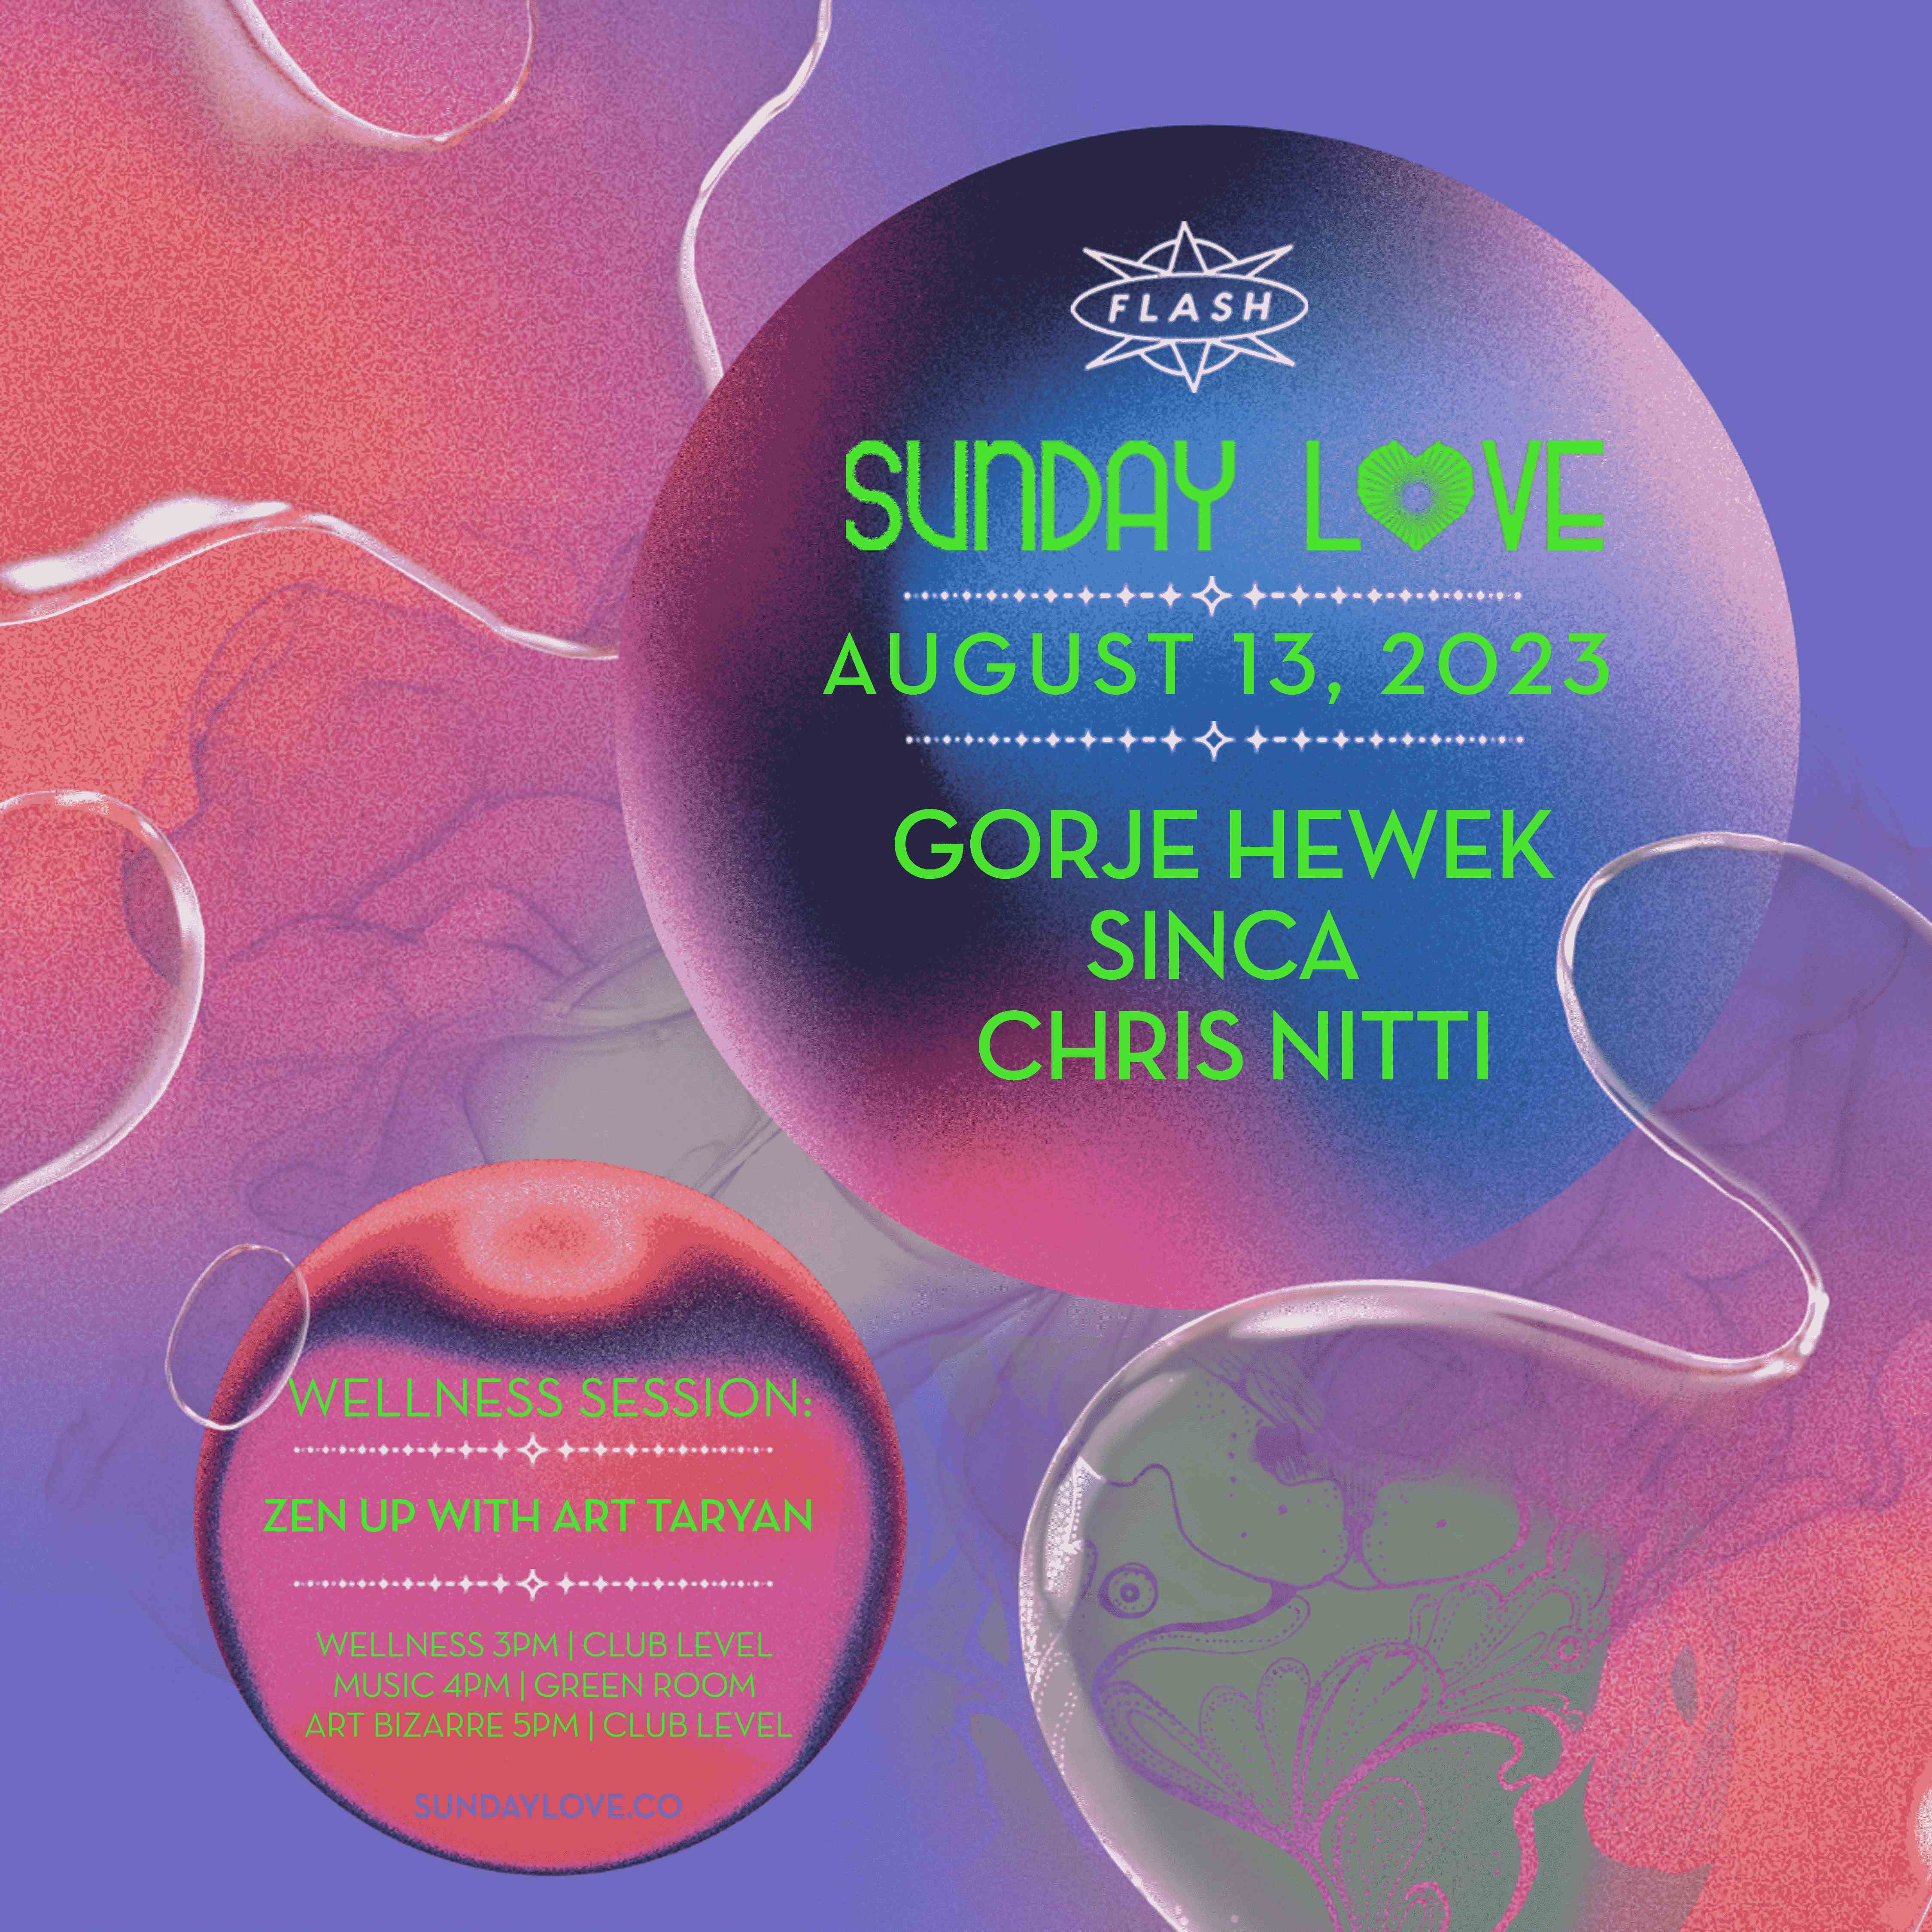 Sunday Love: Gorje Hewek - Sinca - Chris Nitti event flyer